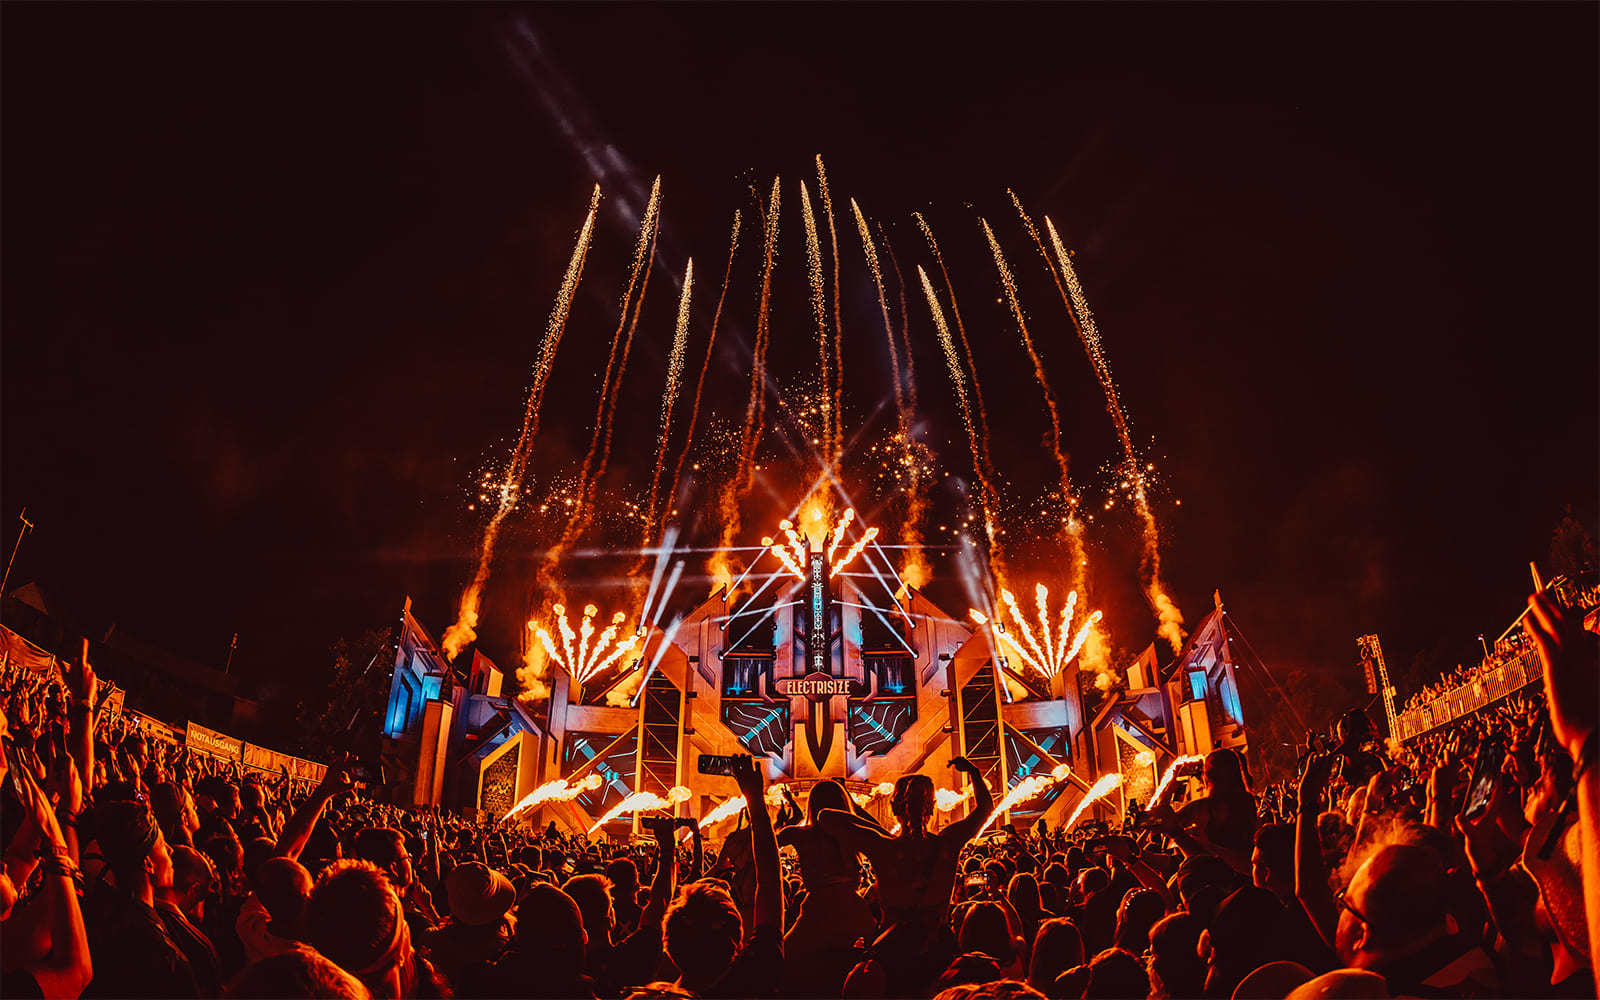 Publikum feiert vor einer Festivalbühne bei Nacht, umgeben von spektakulären Feuerwerkseffekten und Bühnenbeleuchtung beim Electrisize Festival.